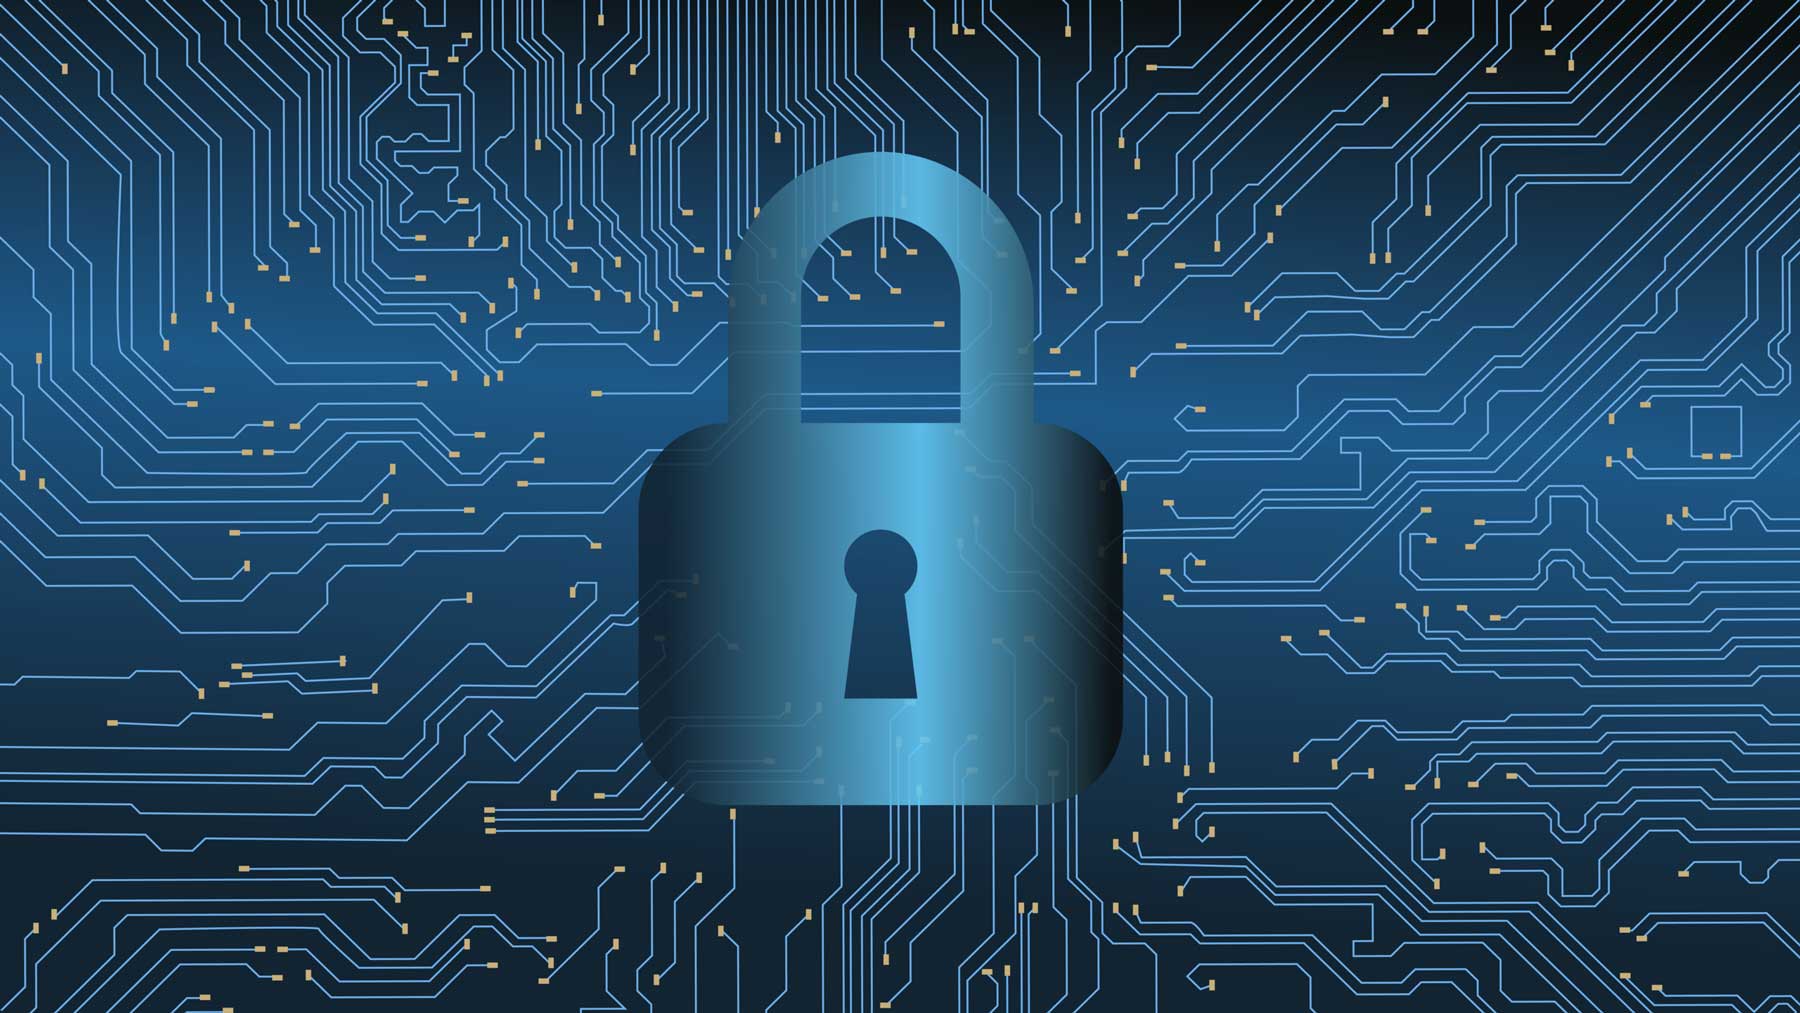  Cyber sécurité : lumière sur les défis et les solutions 